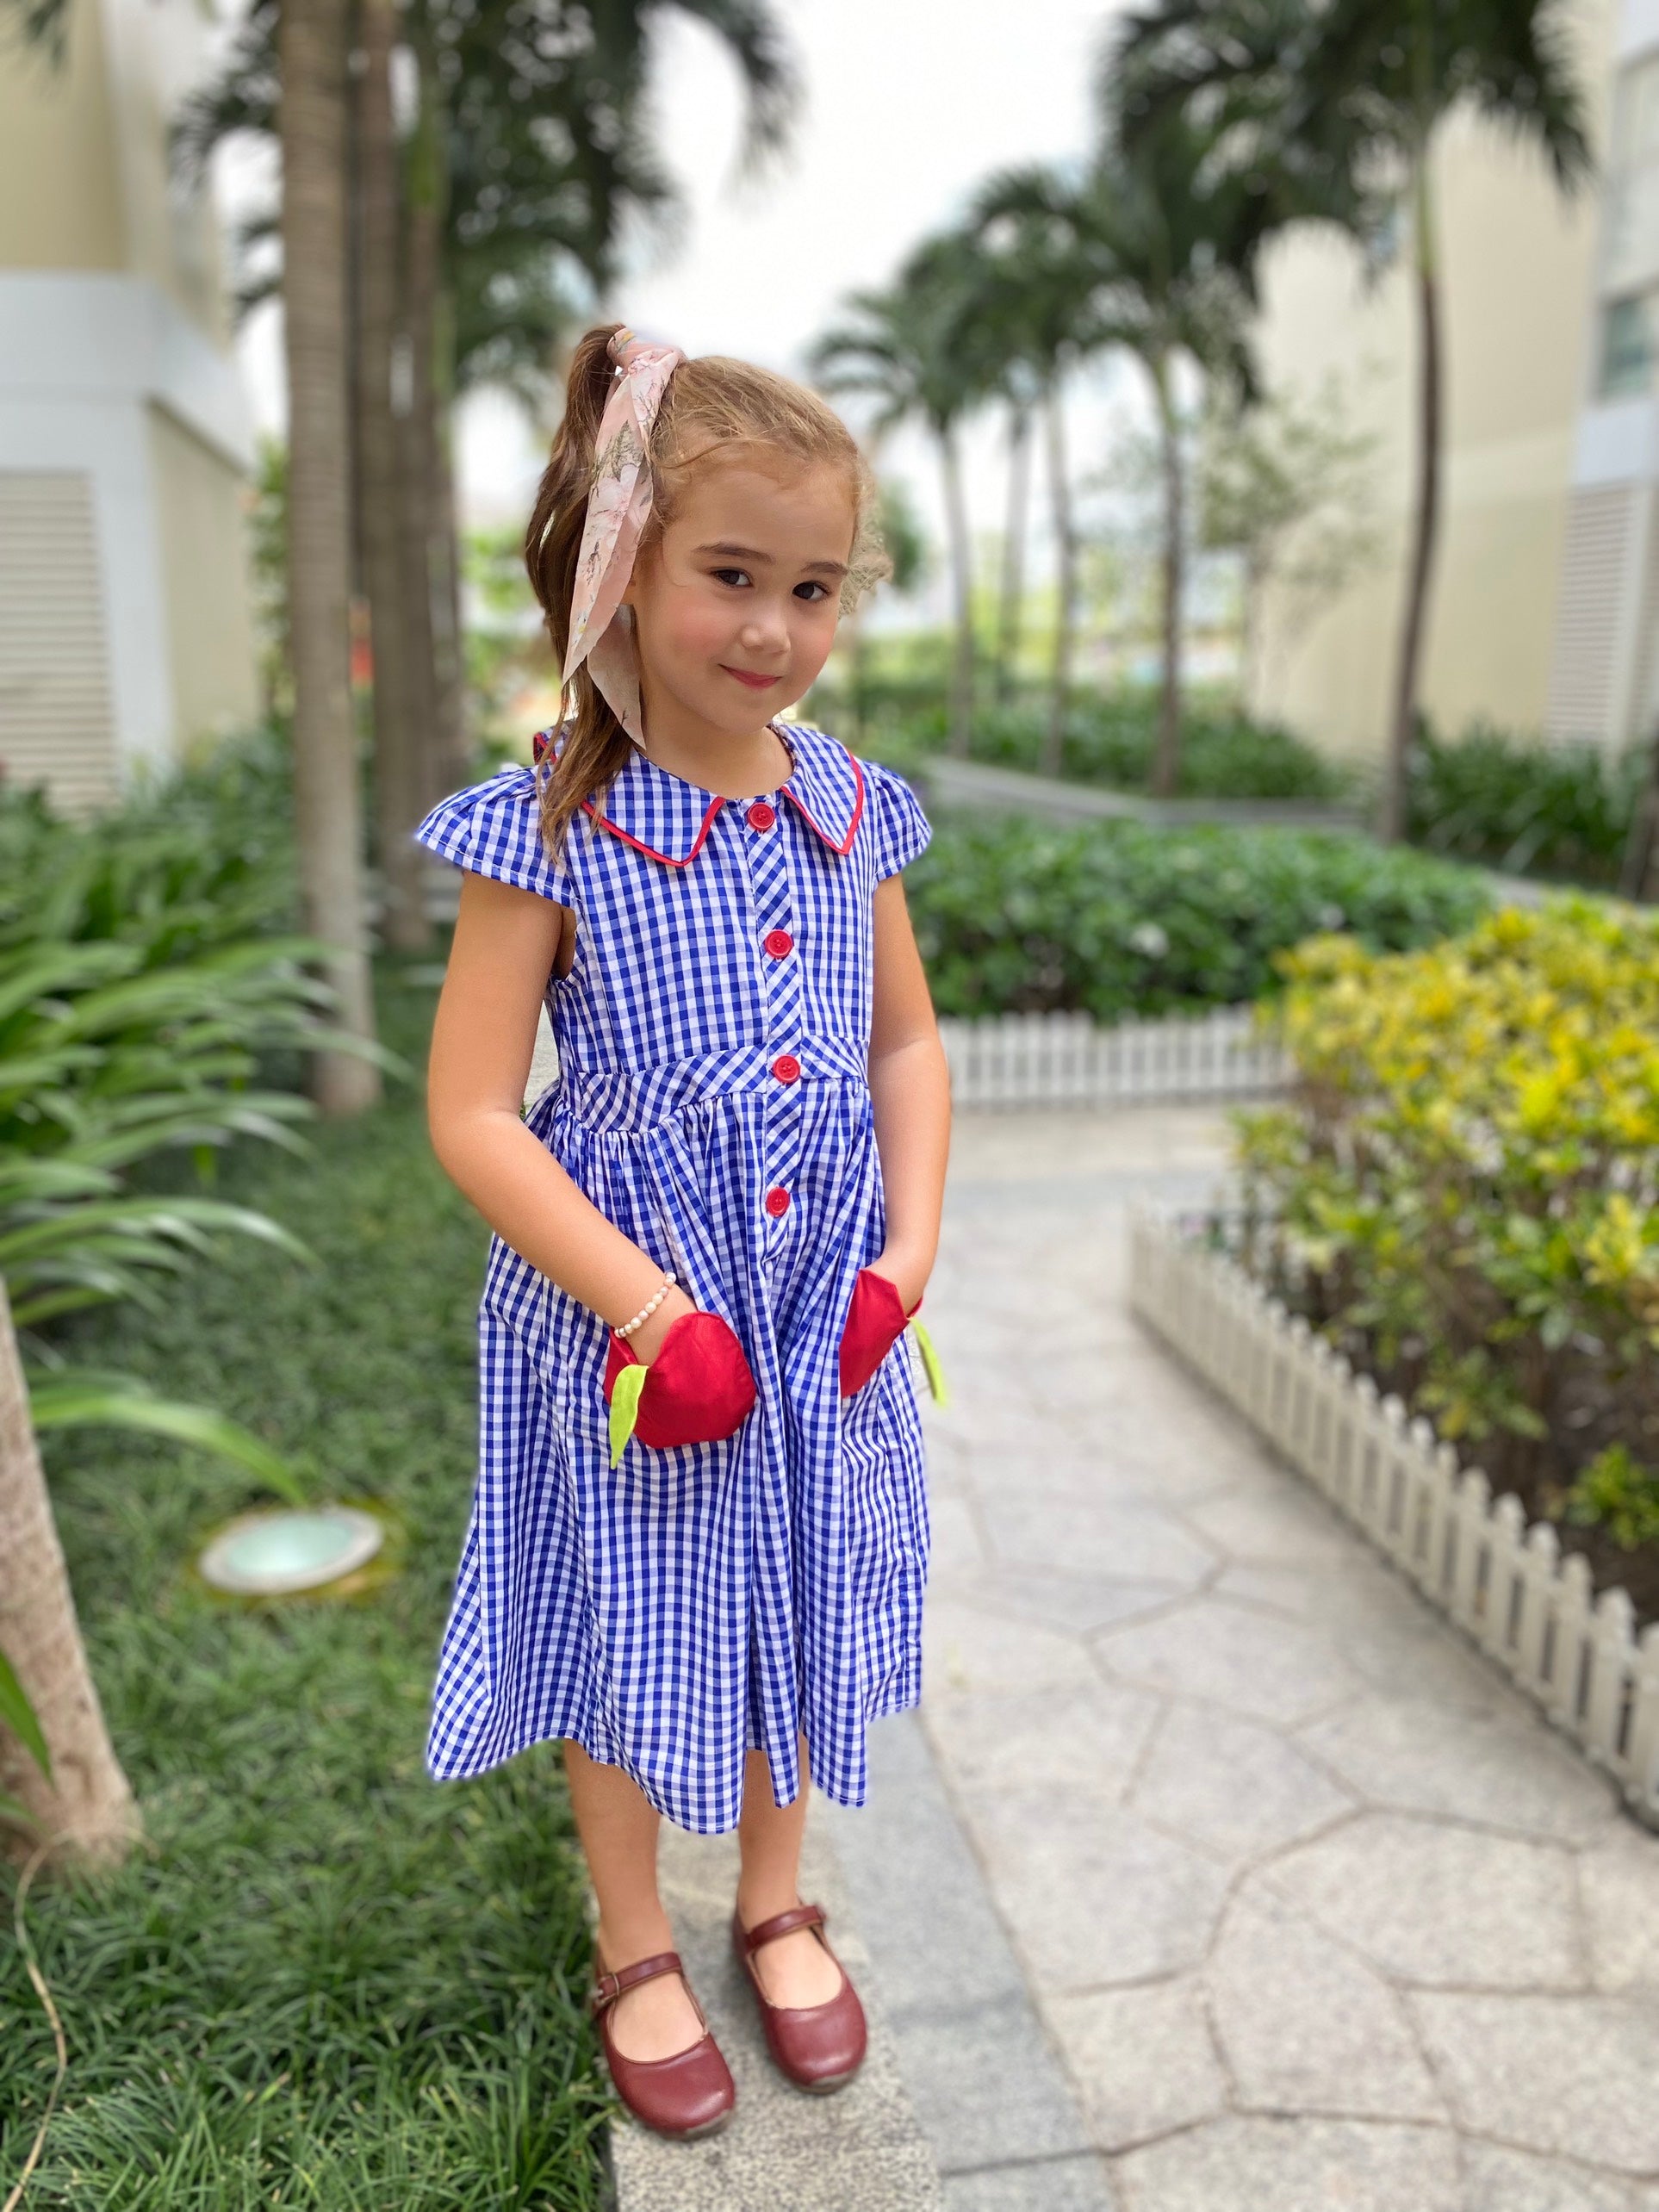 Toddler Girl Back To School Timeless Blue Gingham Apple Dress - Blue/White - Angeline Kids